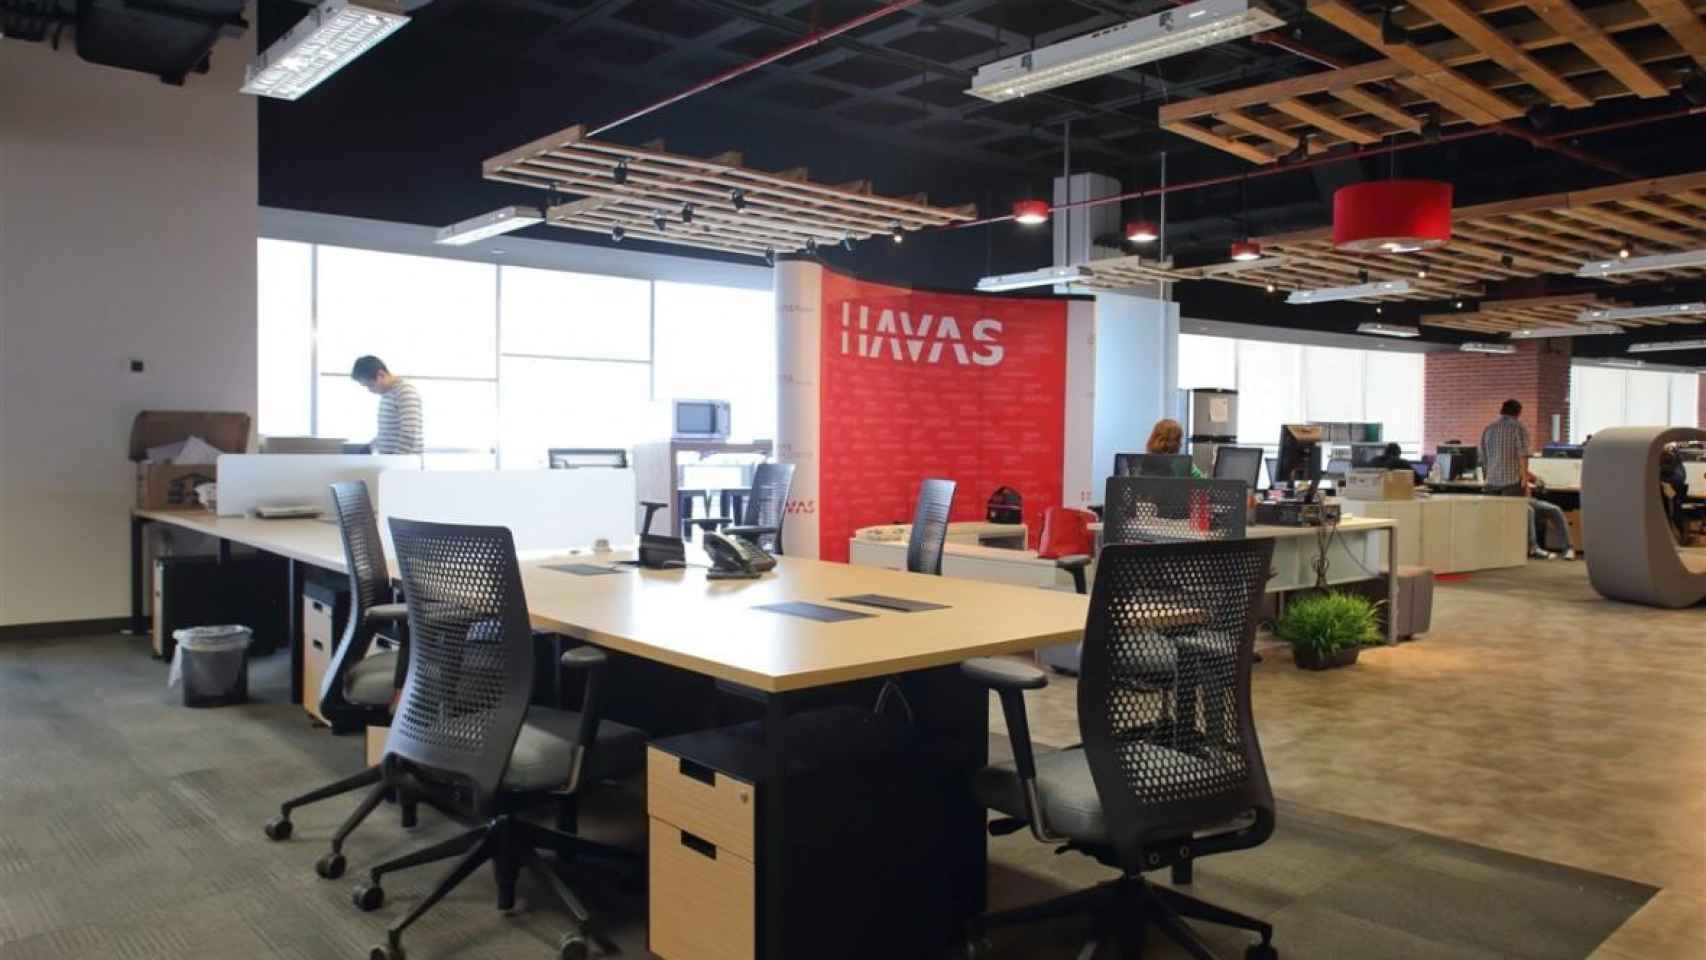 Una oficina de la firma Havas, una de las empresas que se va hoy de Cataluña